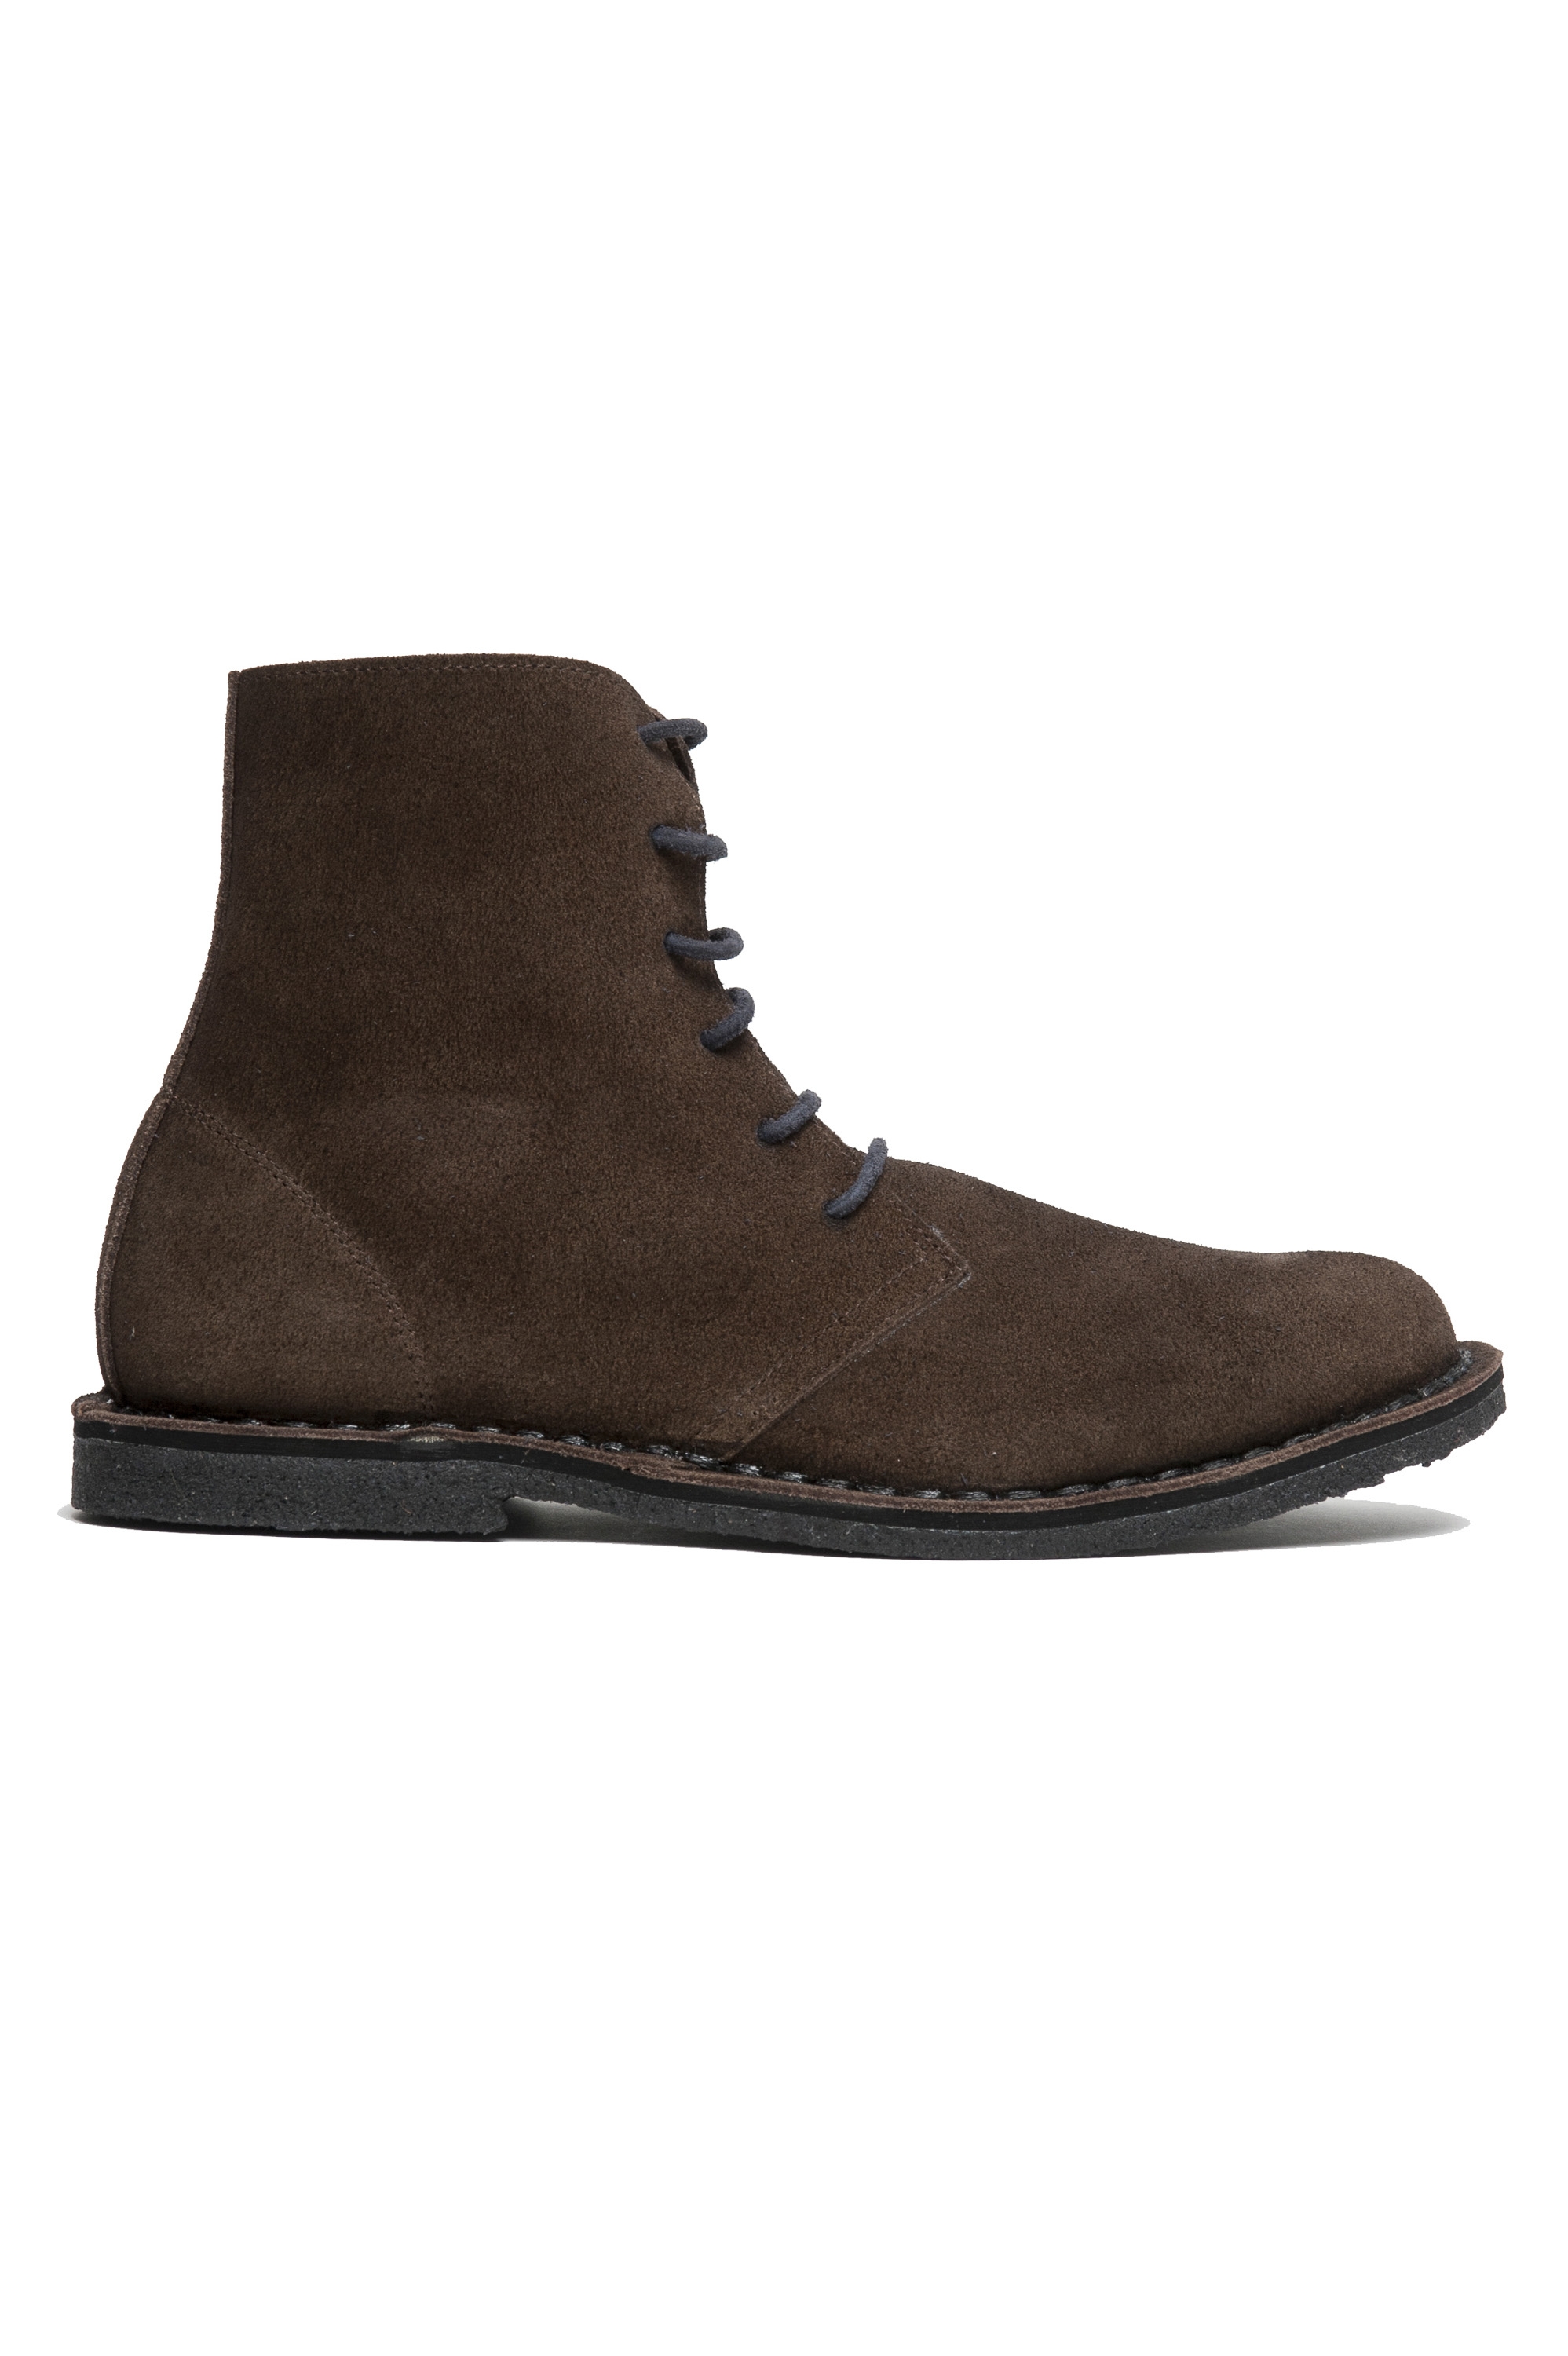 SBU 02957_2020AW Desert boots classiche in pelle scamosciata marrone 01